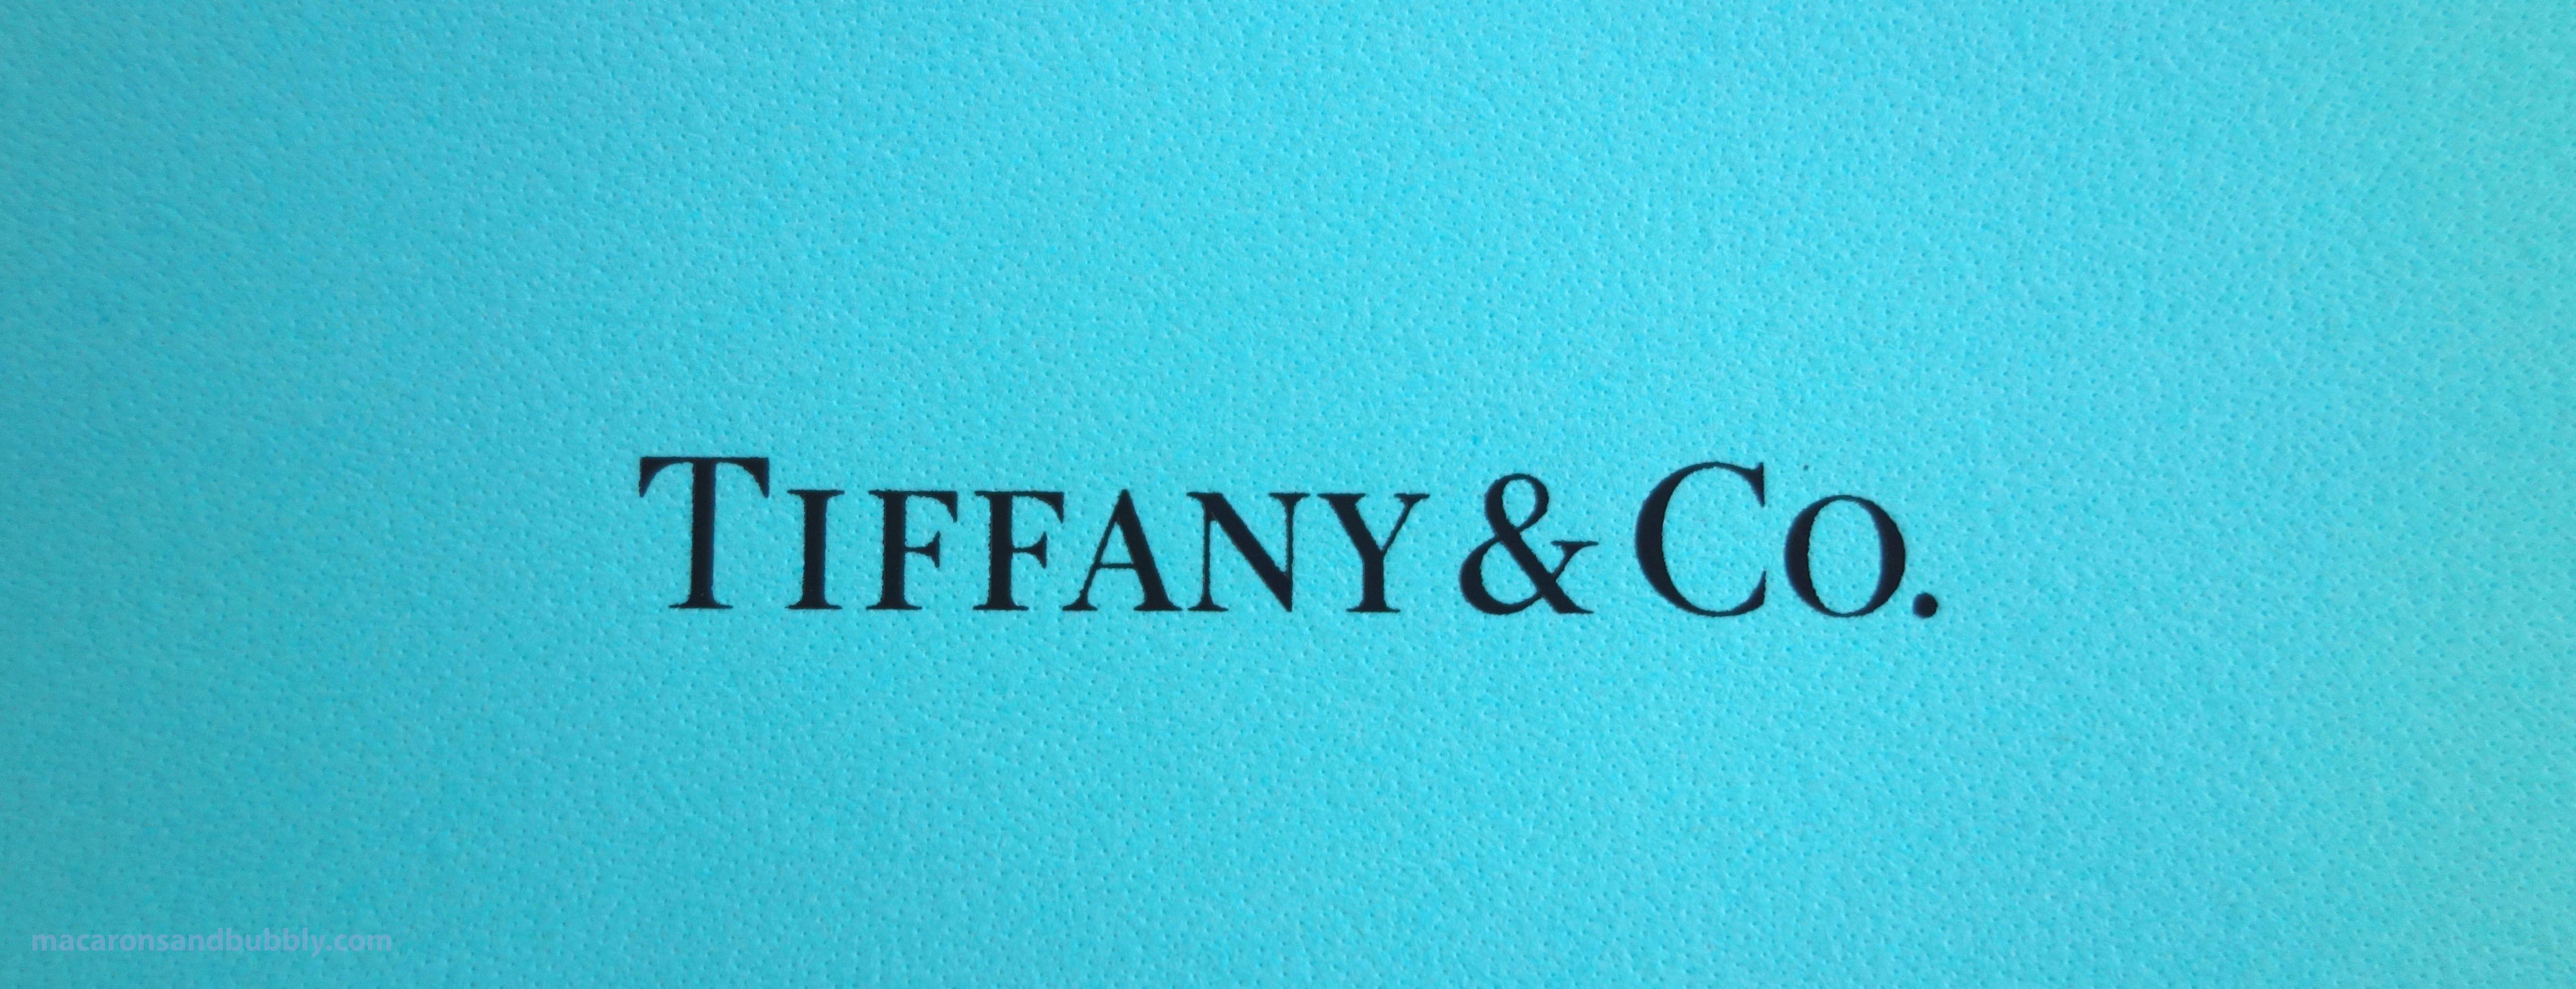 Tiffany Box Logo - Tiffany & Co. Infinity Bracelet – Macarons & Bubbly